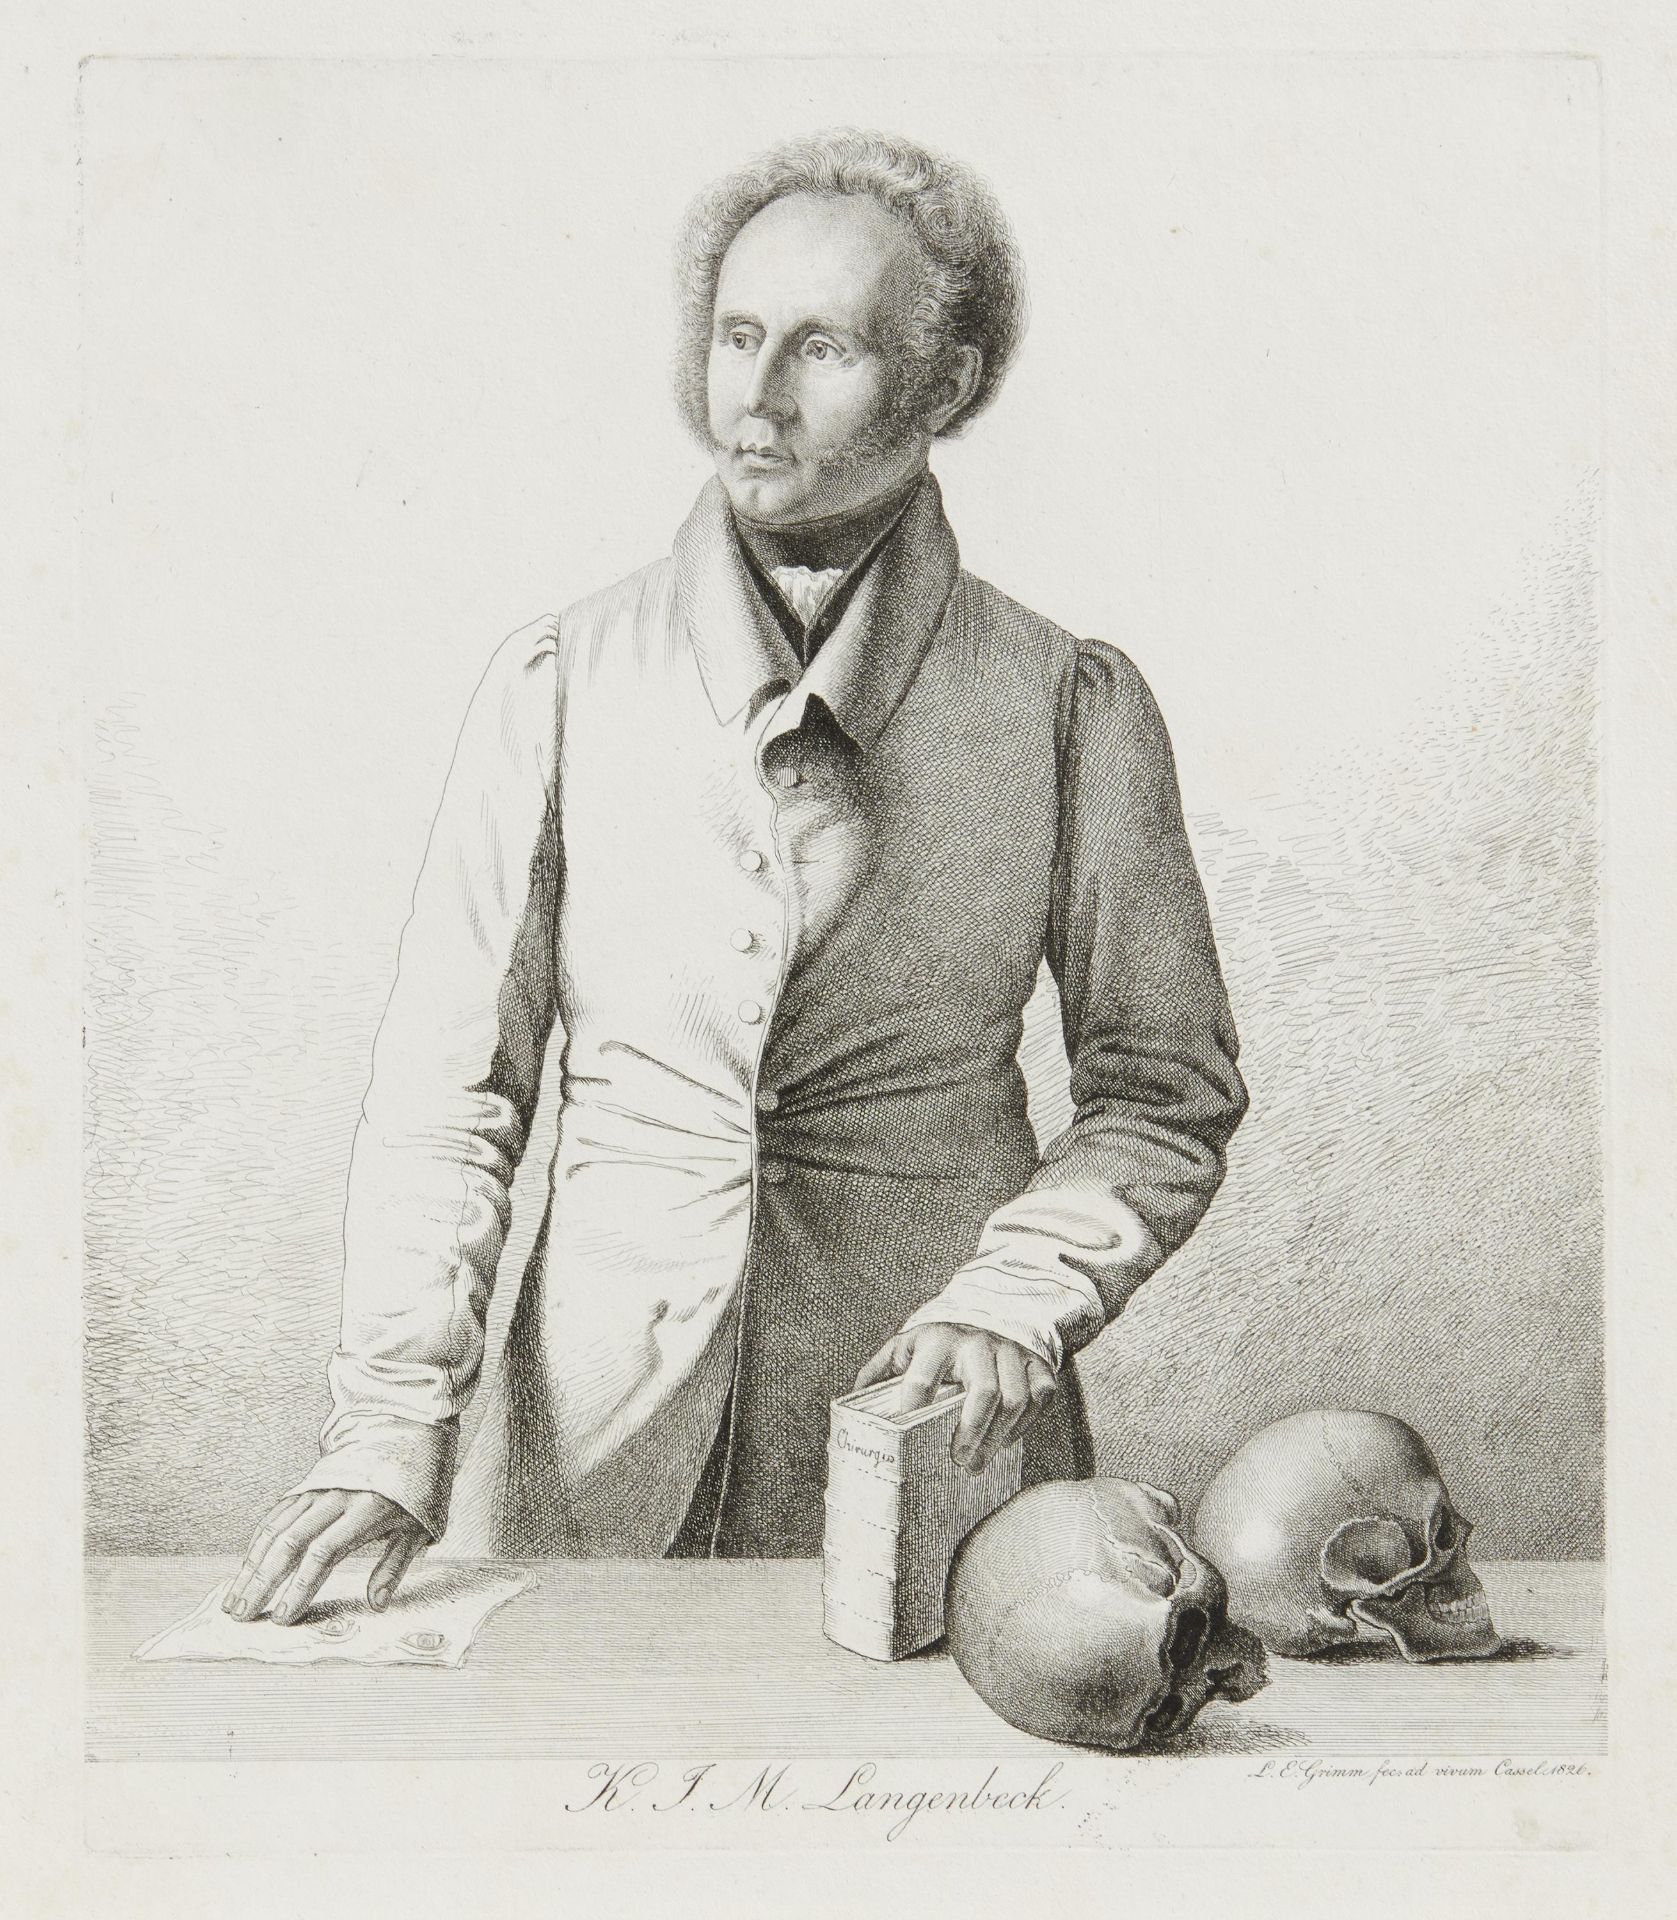 BILDNIS DES AUGENARZTES KONRAD JOHANN MARTIN LANGENBECK. Datierung: Kassel. 1826. Meister/Entwerfer: